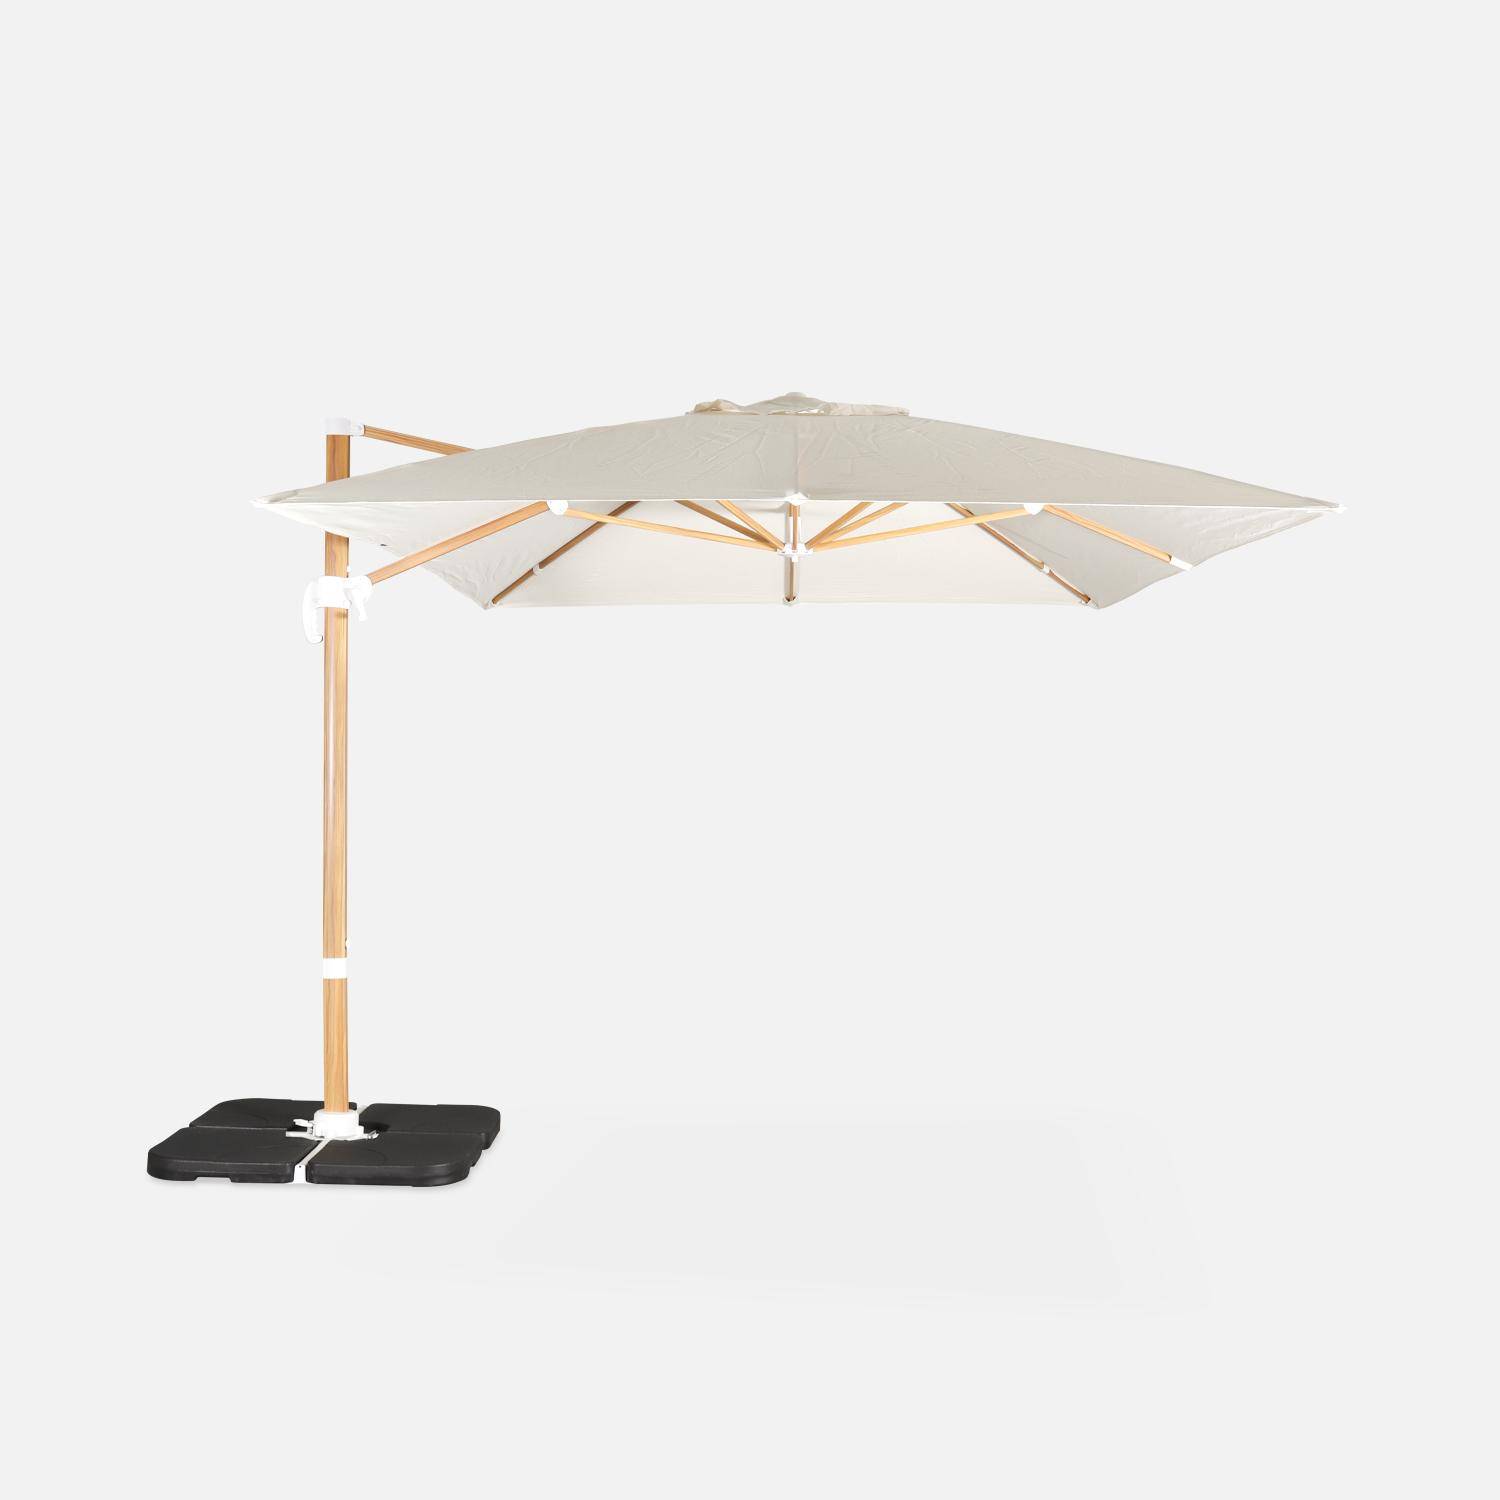 Rechthoekige ecru parasol 3x4m, paal met houteffect, verzwaarde tegels 50x50cm,sweeek,Photo4